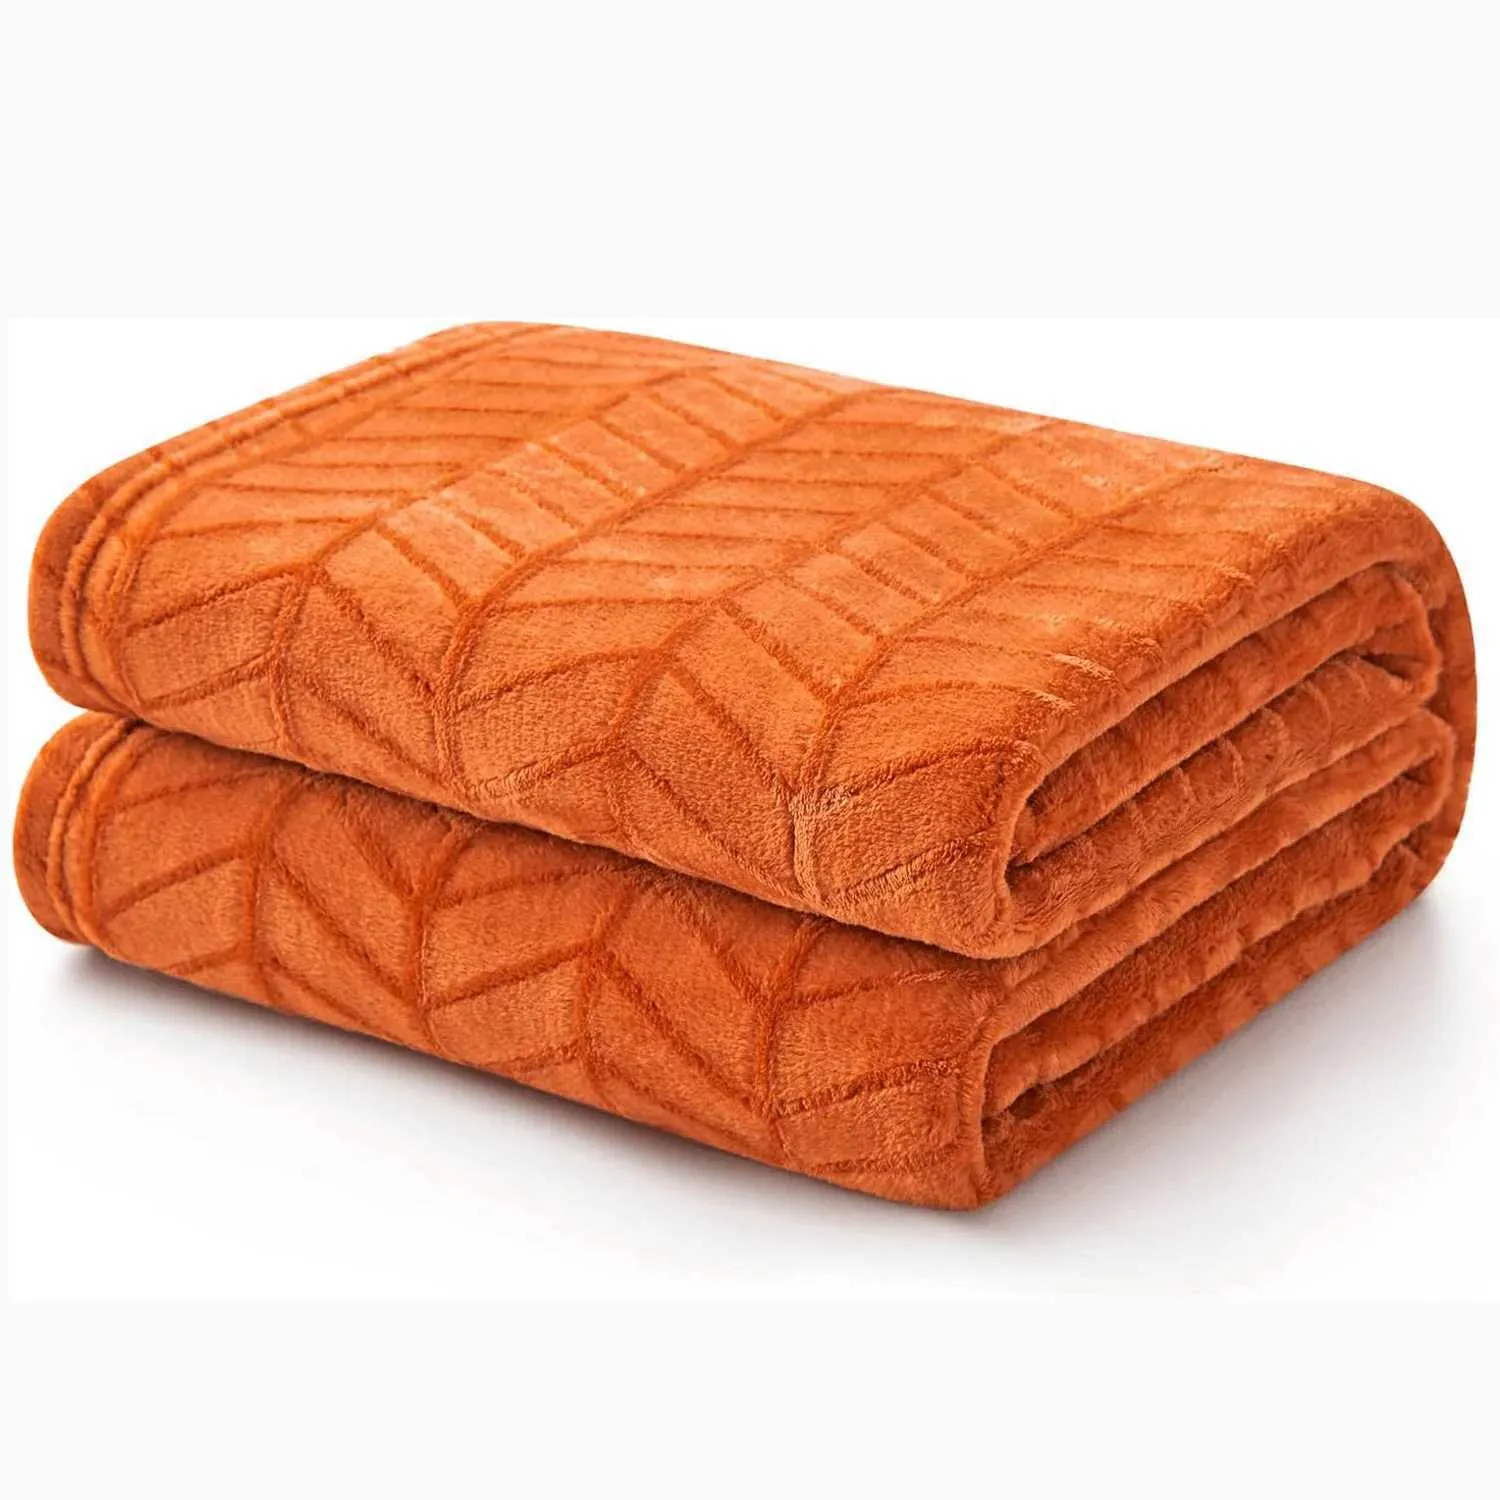 Decken weich gebürstete Flanellwurf Decke verbrannt orange Fleece Decken Chevron -Muster für Sofa Stuhl Couch - flauschiger warm gemütlich